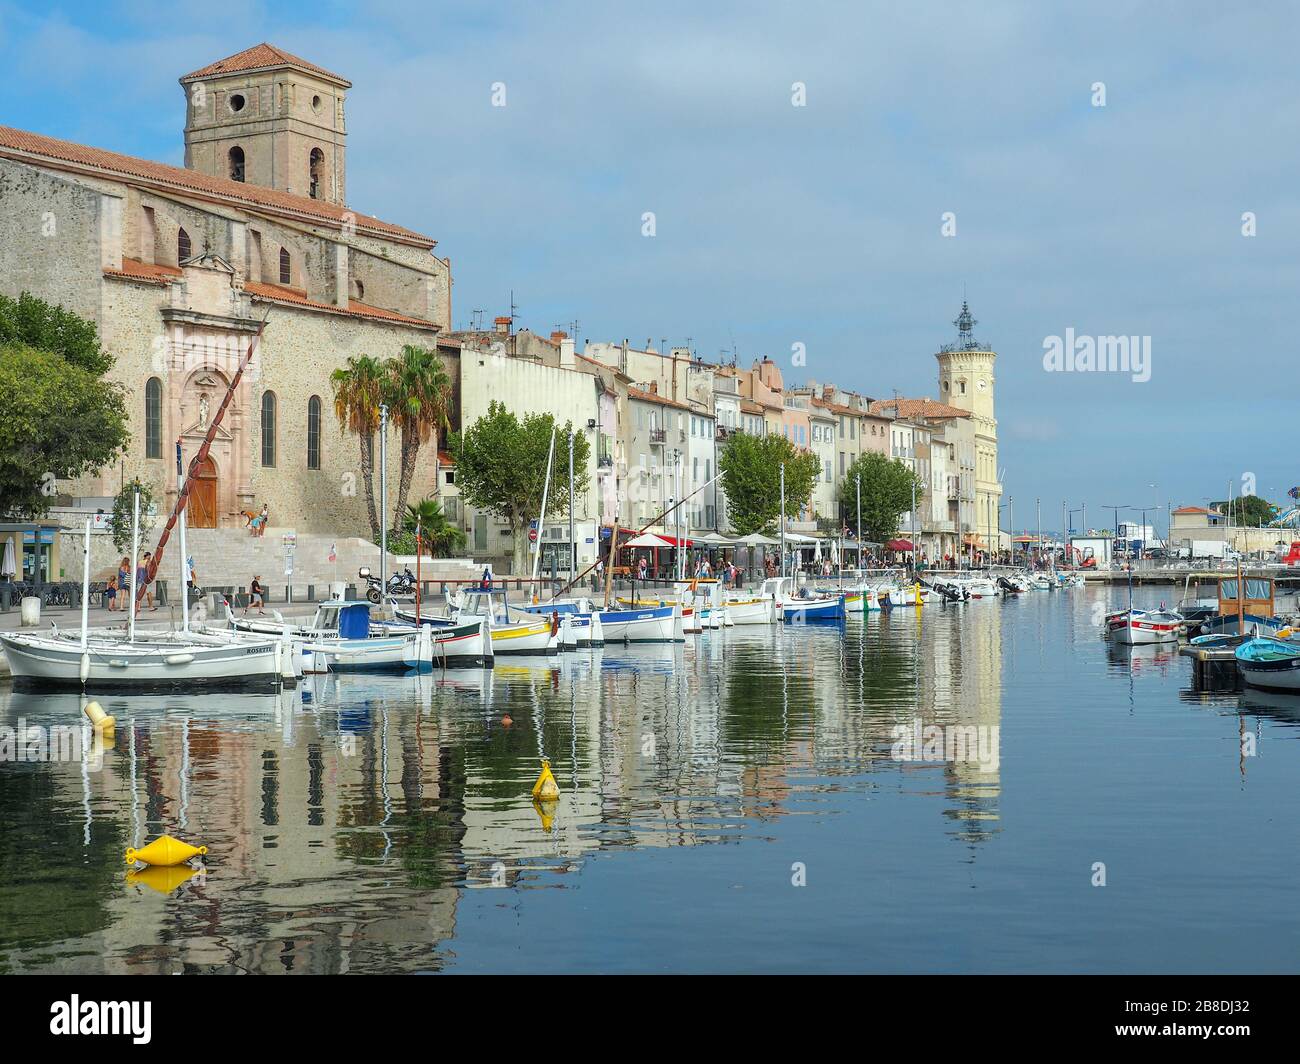 Le Vieux port aka vieux port dans une ville méditerranéenne de la Ciotat dans le sud de la France avec beaucoup de petits bateaux amarrés et l'église principale de la ville Banque D'Images